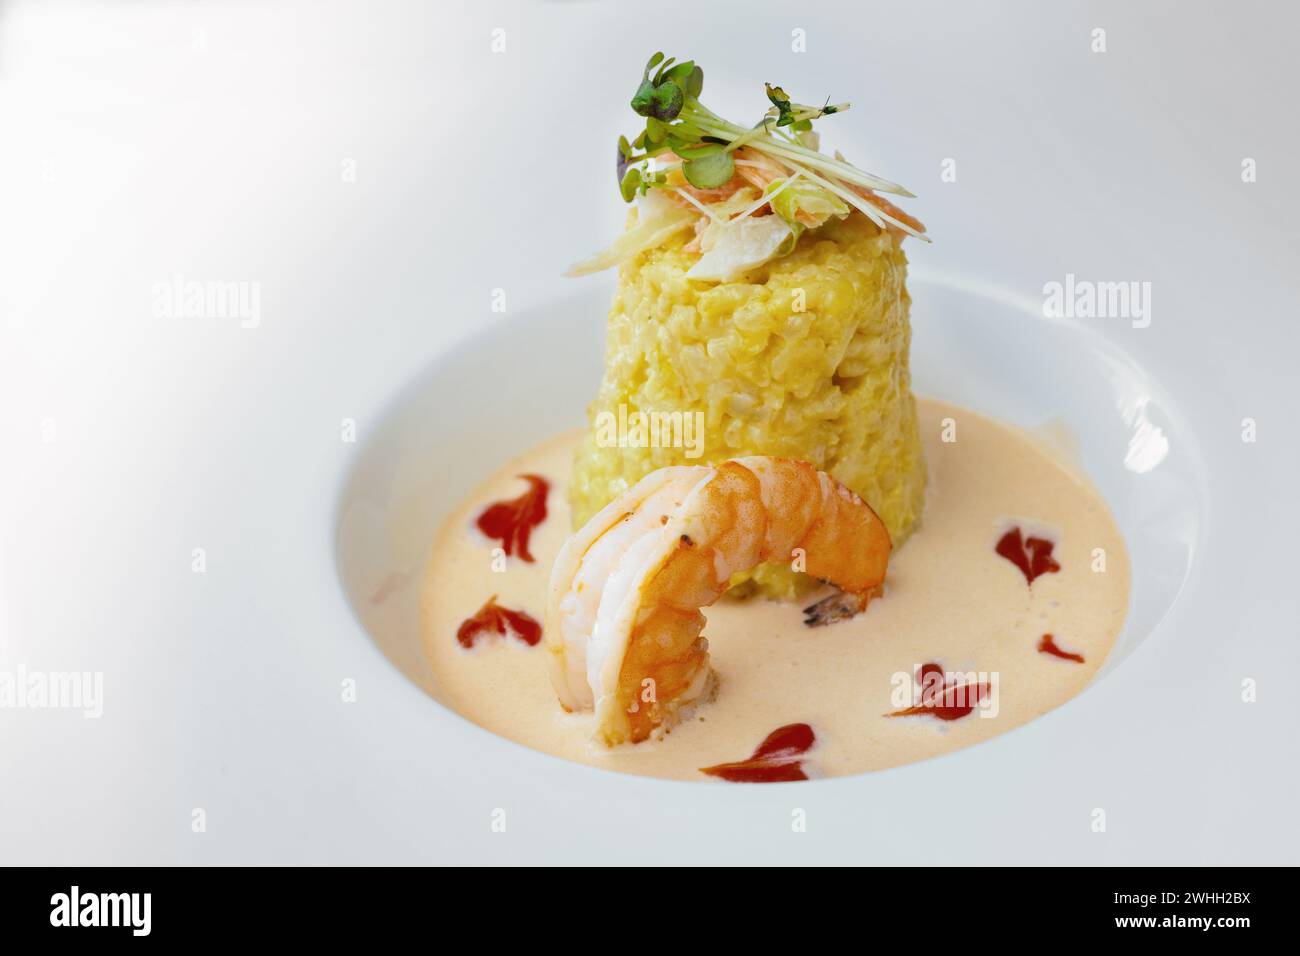 Gourmet-Gericht aus Safranrisotto mit Gemüse- und Kräuterbelag, einer großen Garnelen- und Krustentiersauce auf einer modernen weißen Platte, c Stockfoto